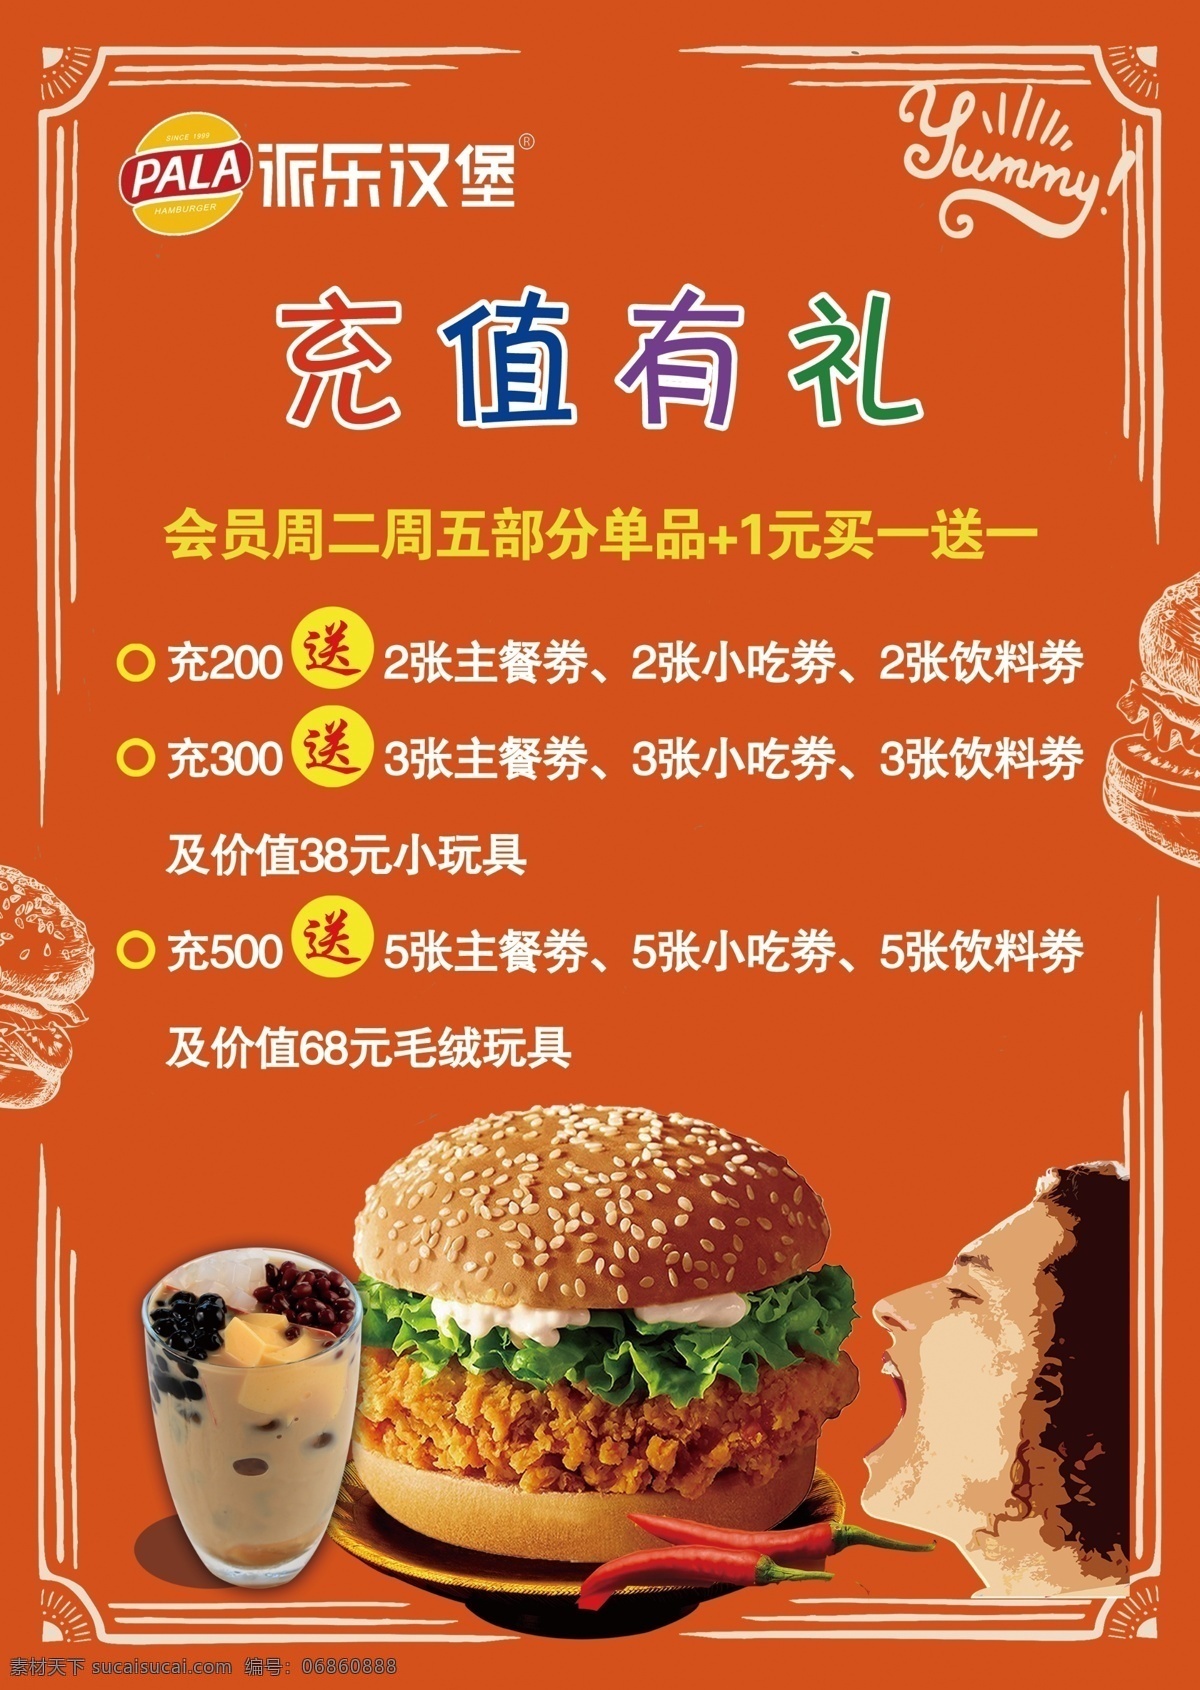 派 乐 汉堡 宣传单 派乐汉堡 充值优惠 全民吃鸡 活动 彩页 海报 黄色背景